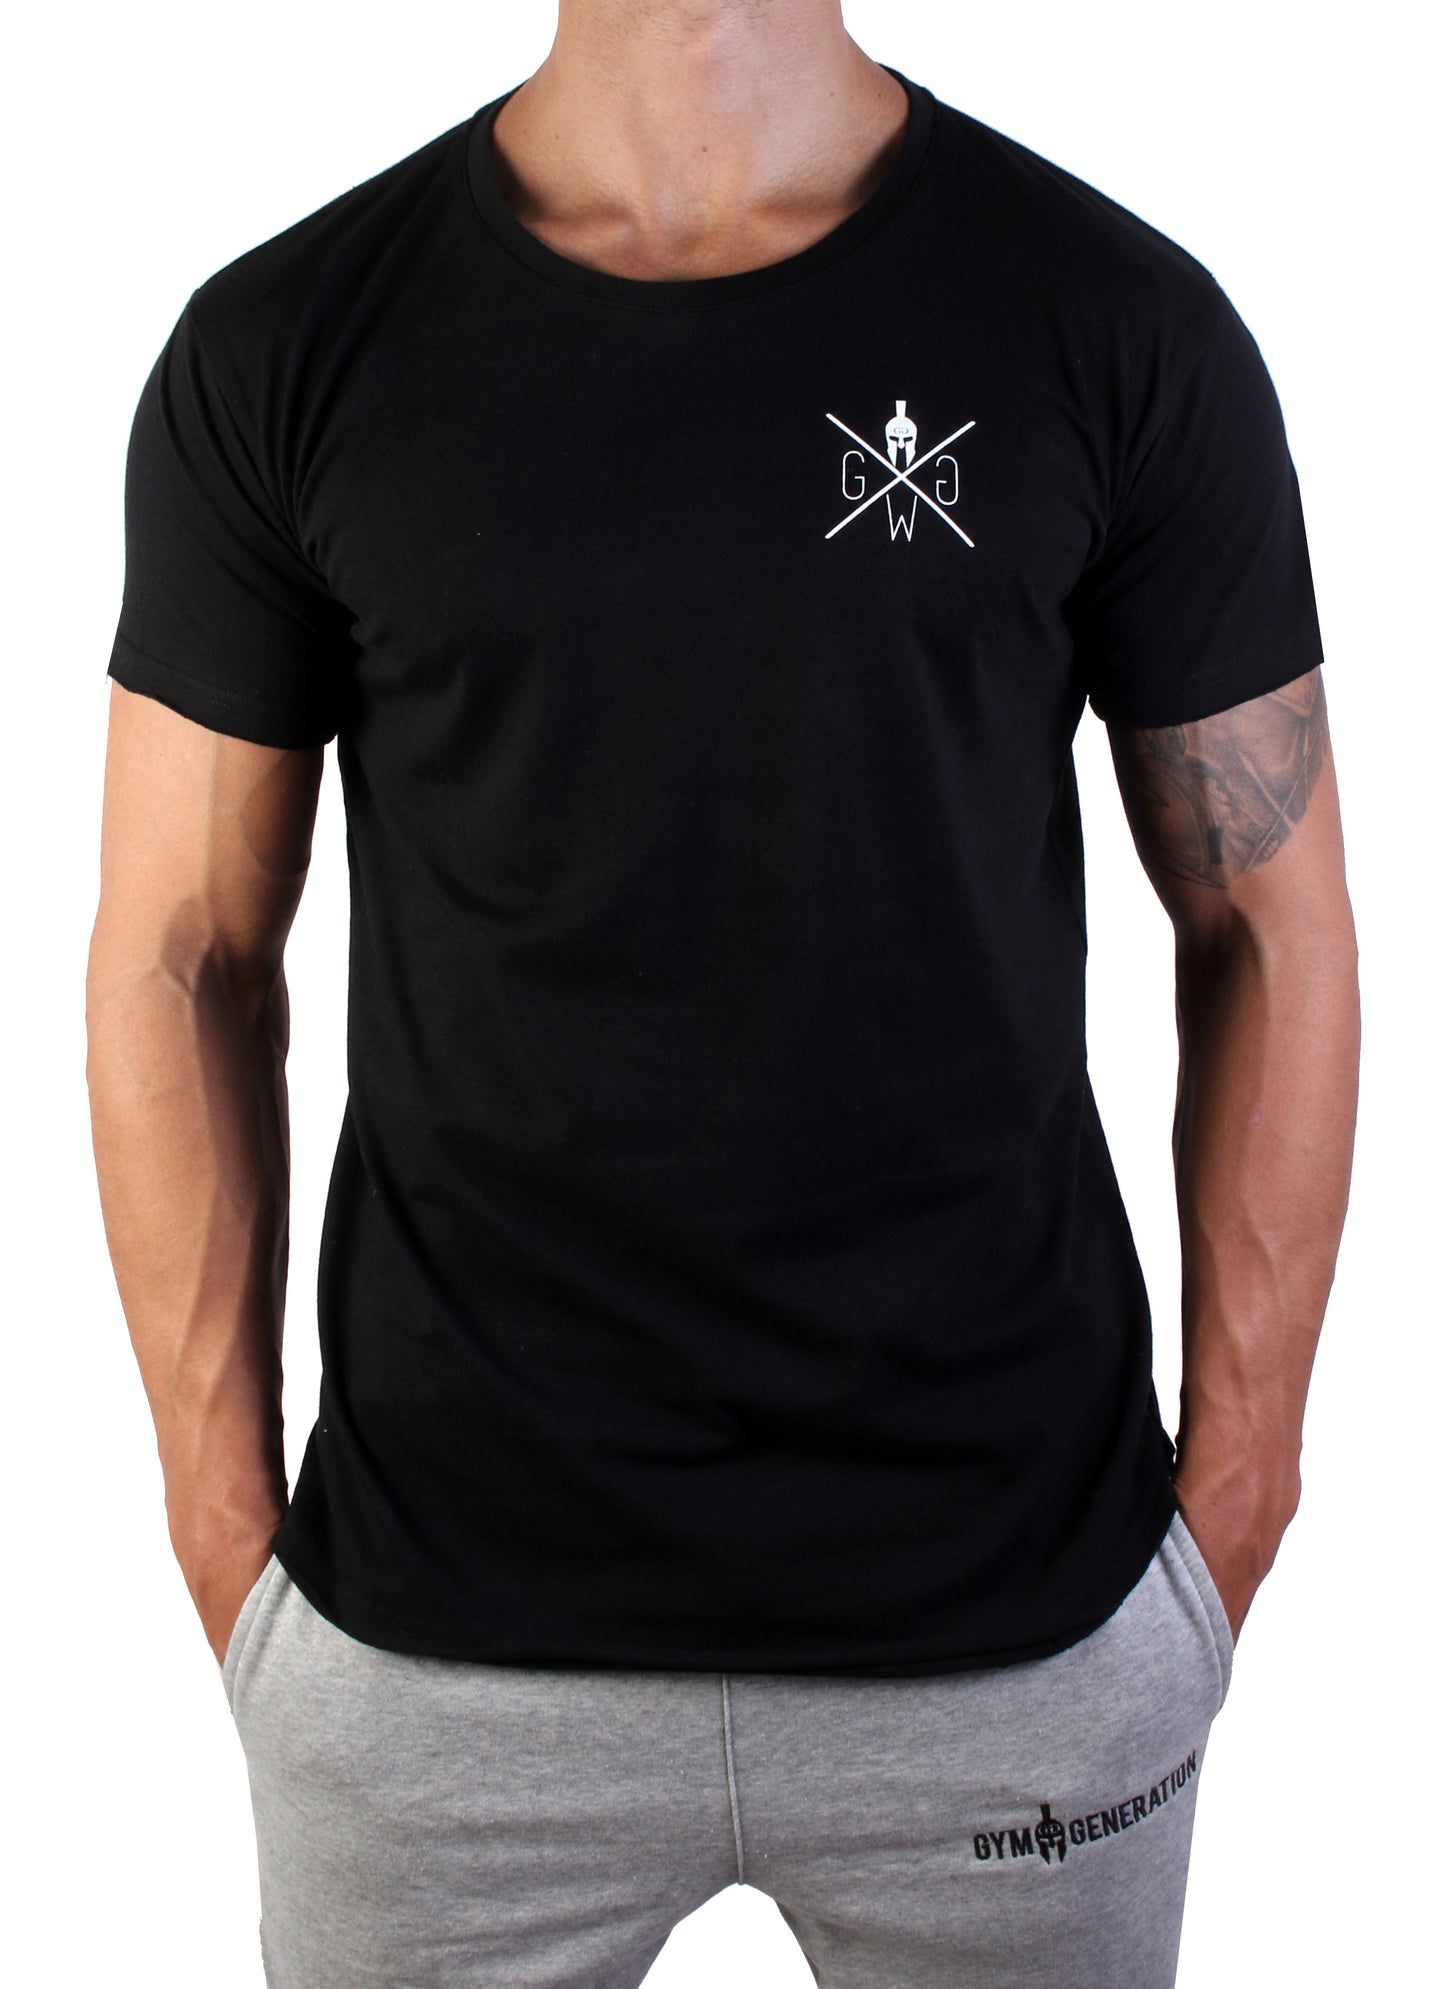 Warrior 89 T-Shirt - Schwarz